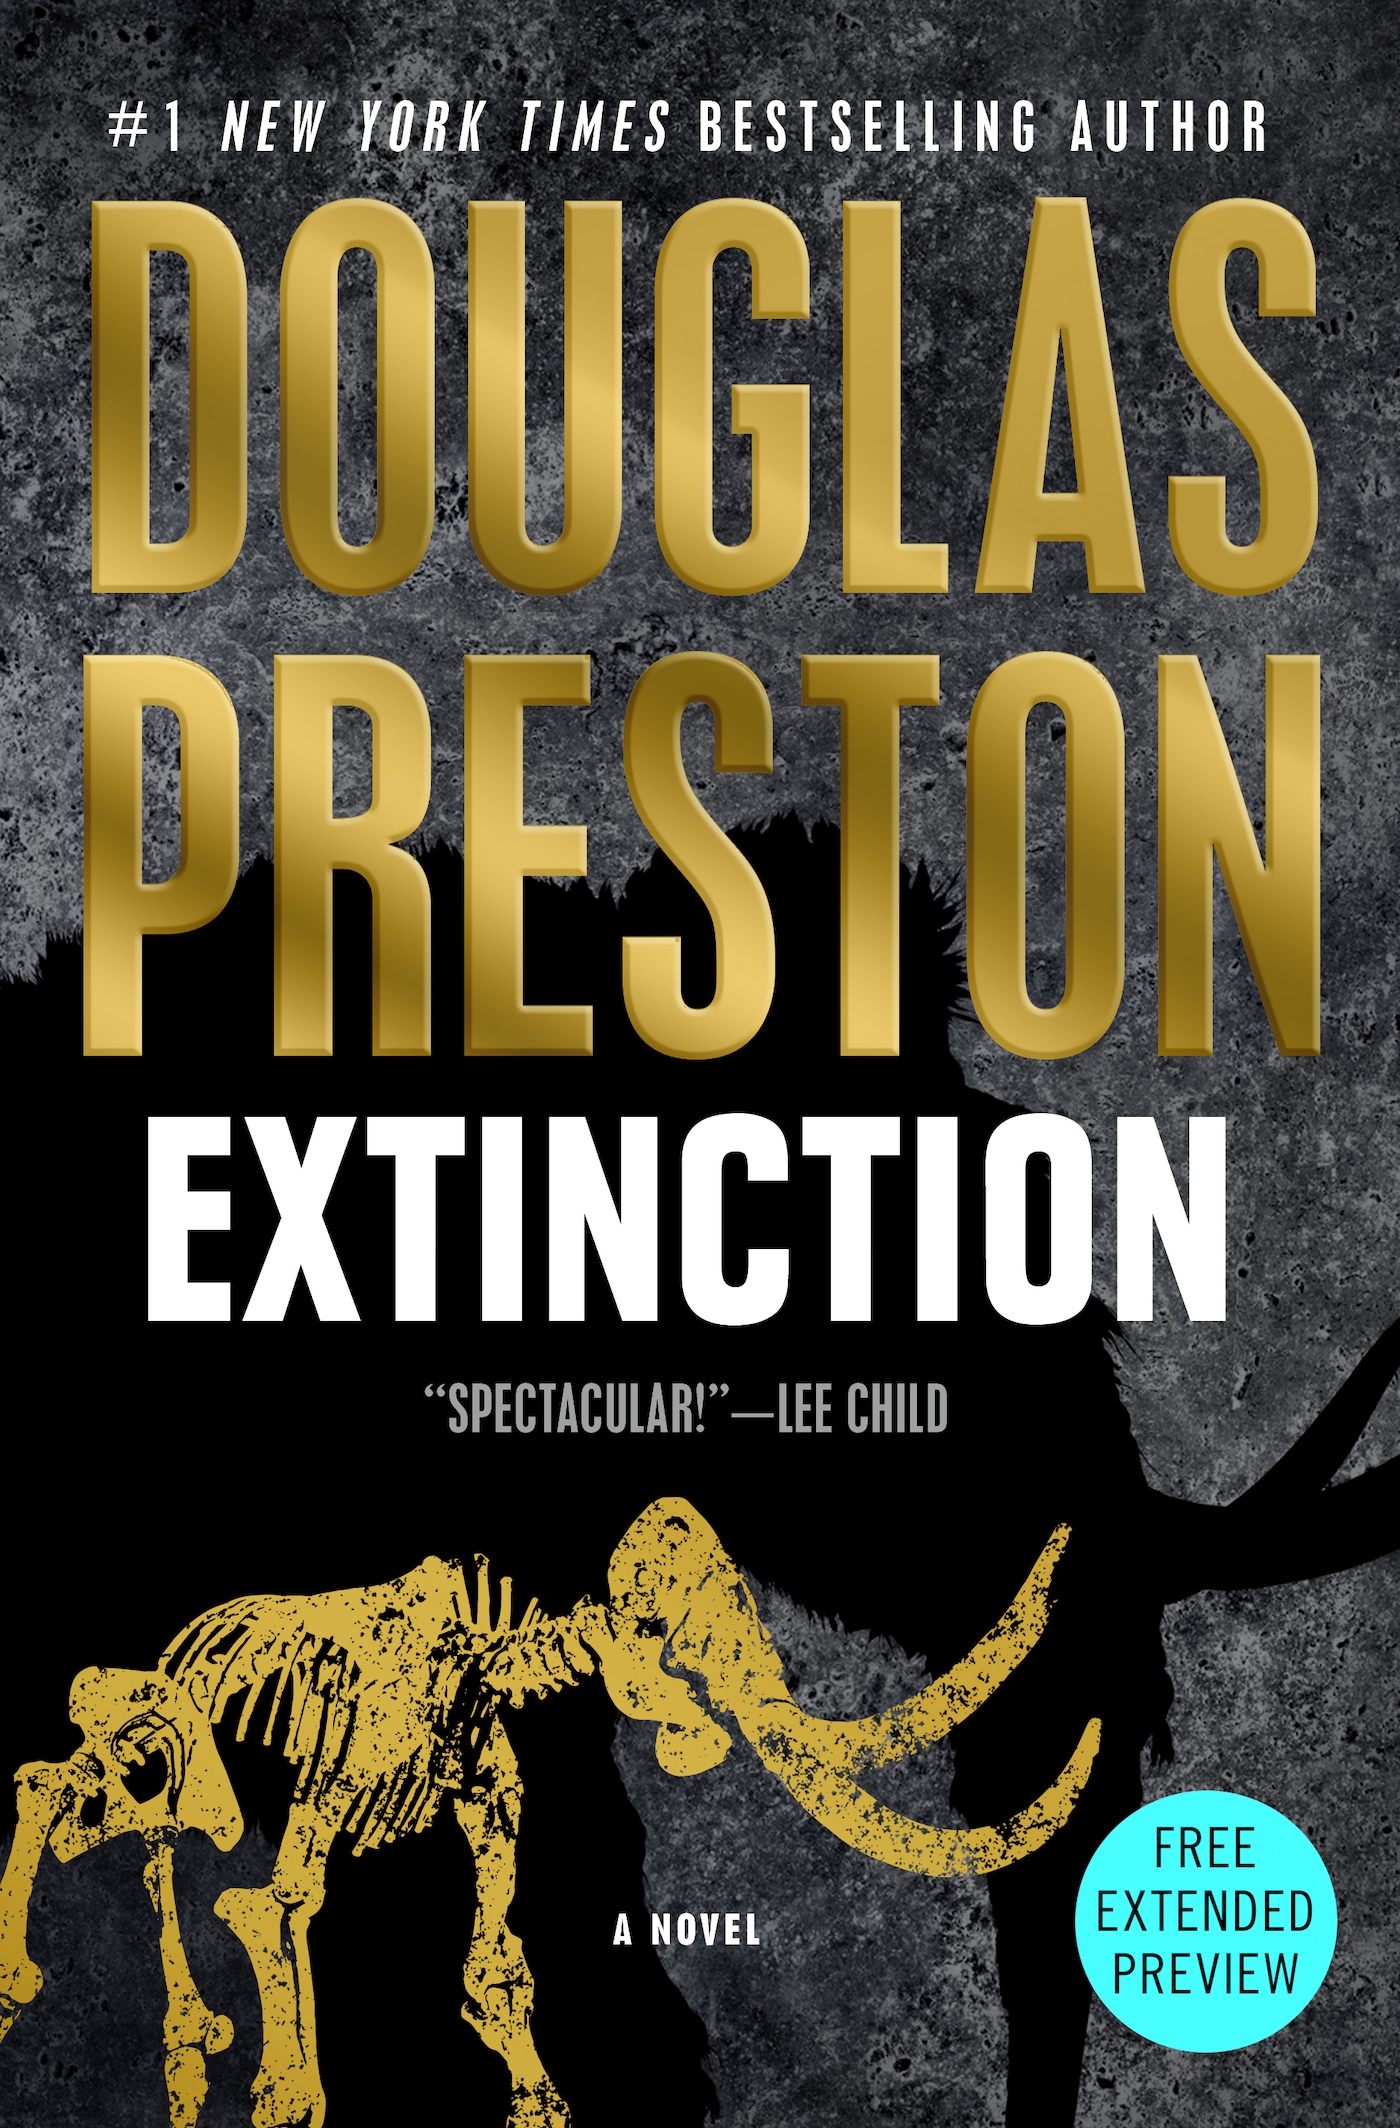 Sneak Peek for Extinction by Douglas Preston